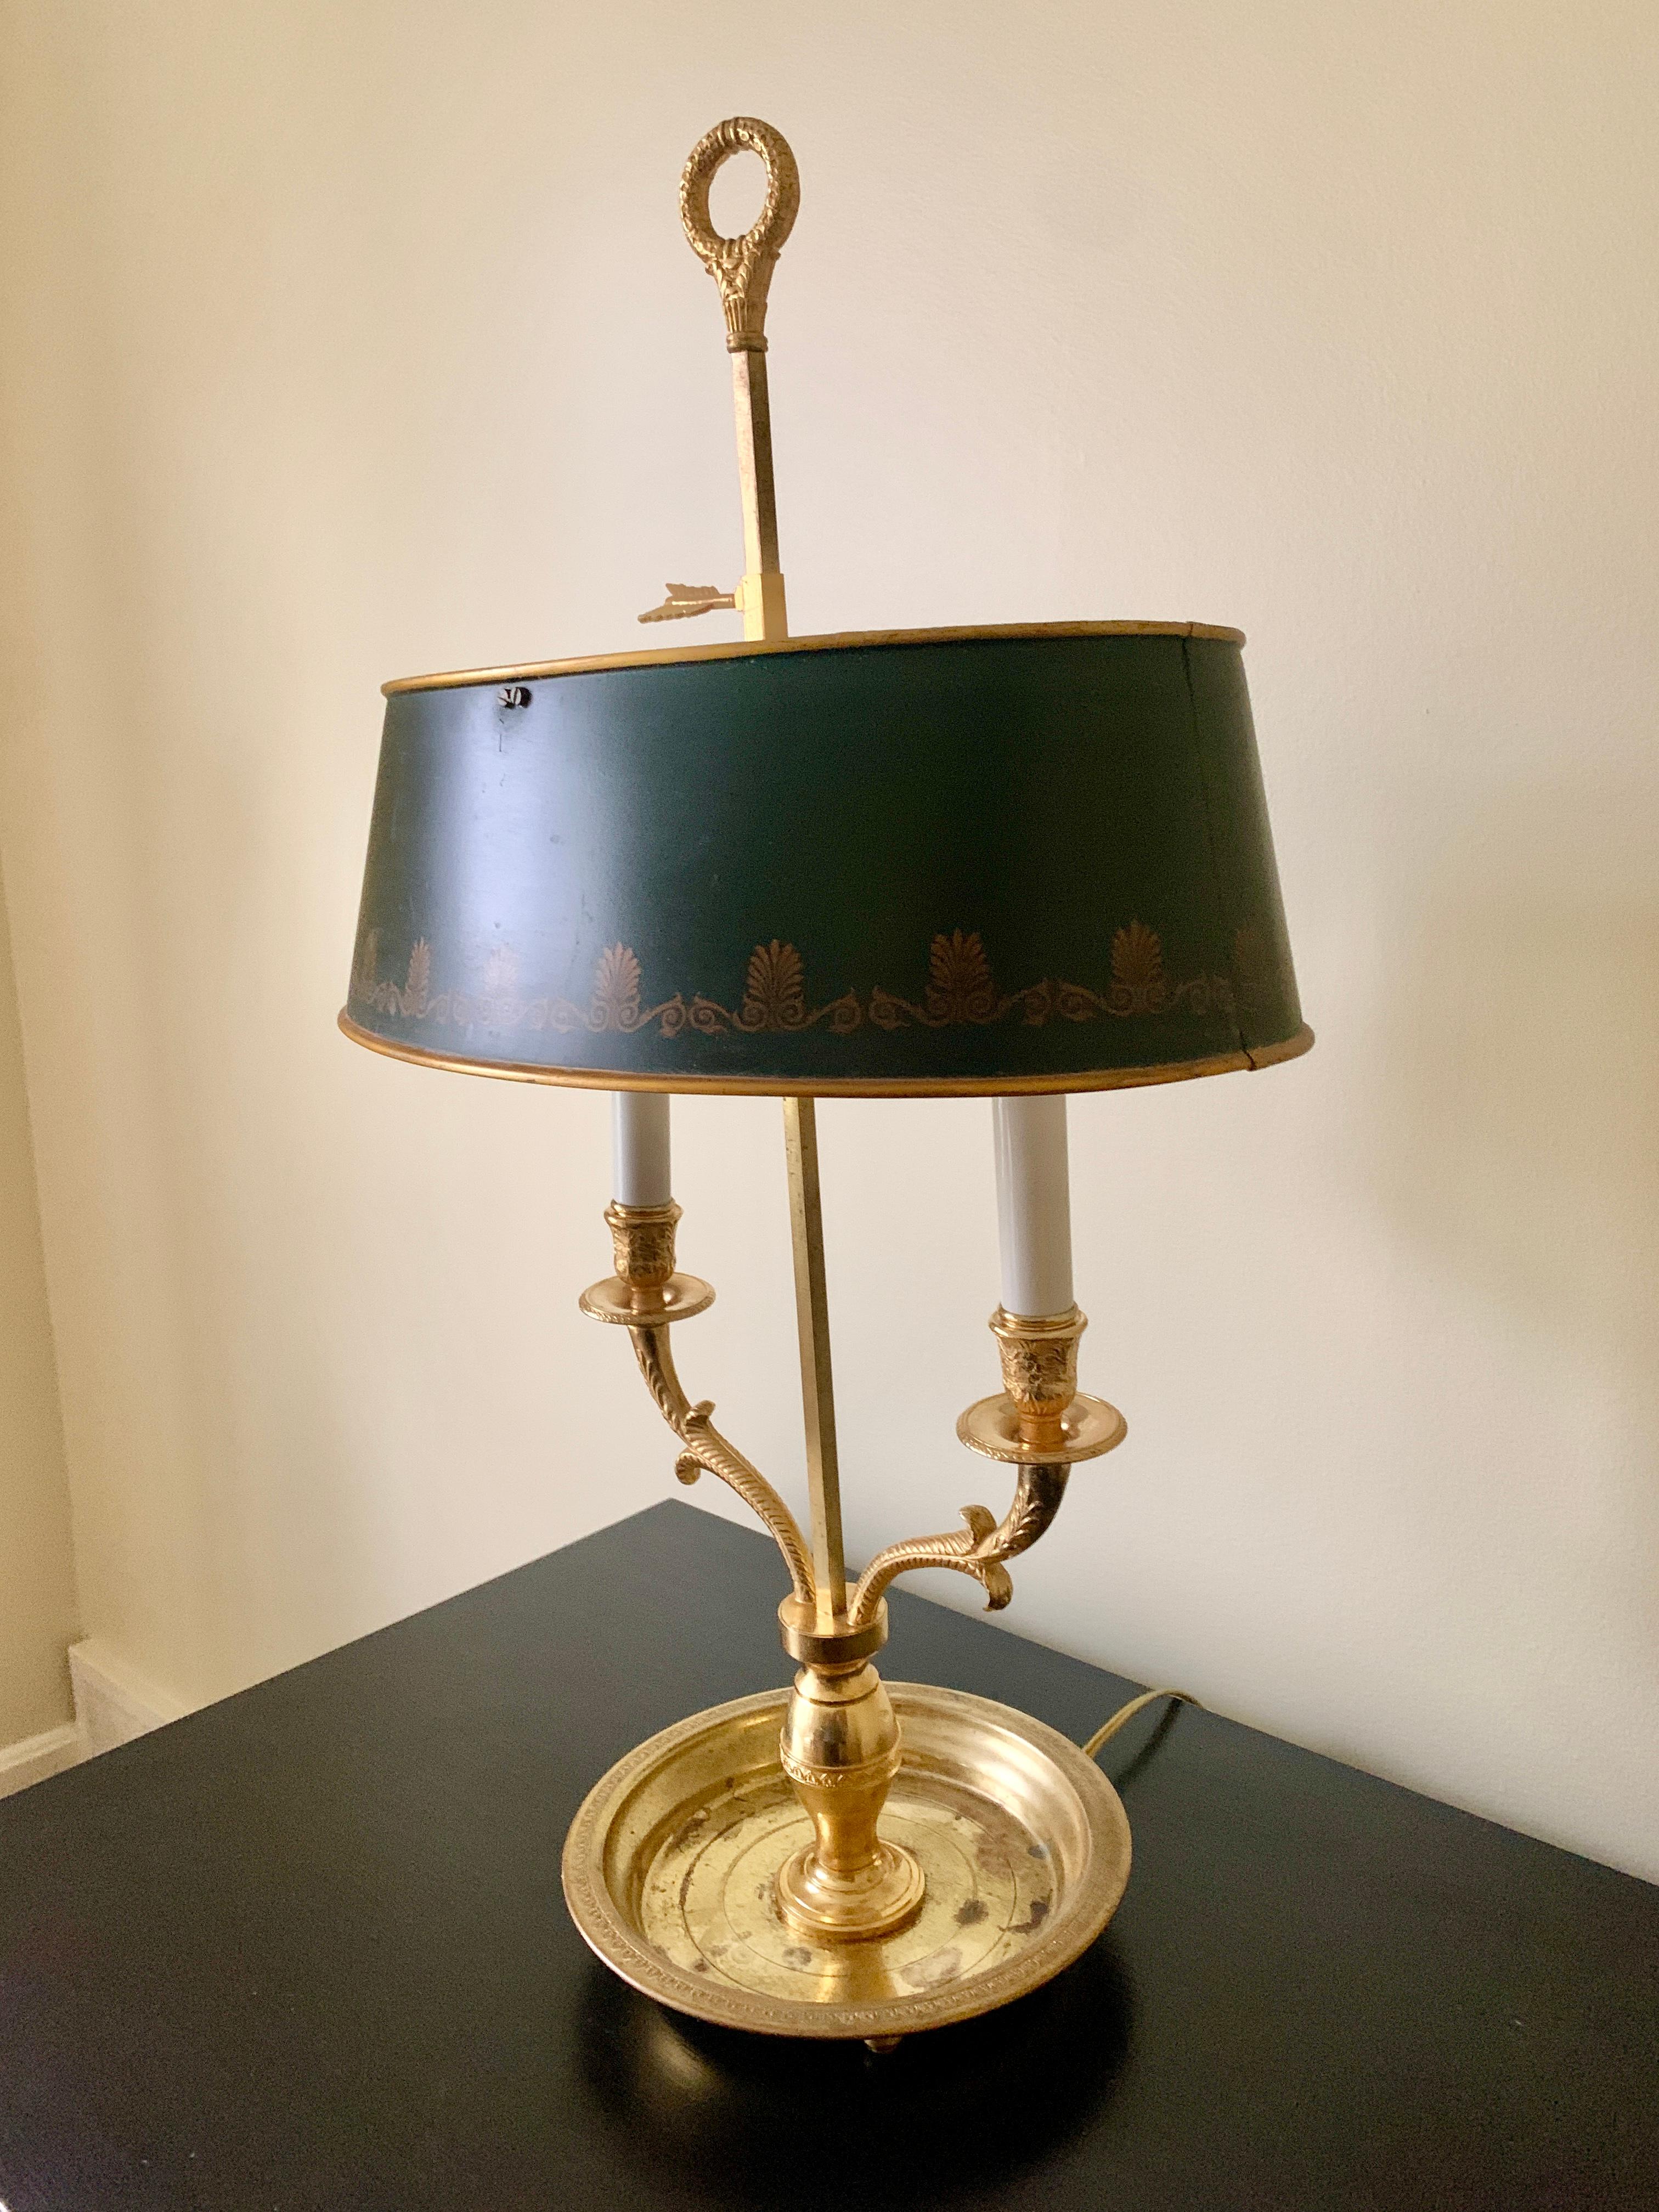 Bouillotte-Lampe aus Messing im französischen Provinzial-Stil mit schabloniertem grünem Zinnschirm (Französische Provence)